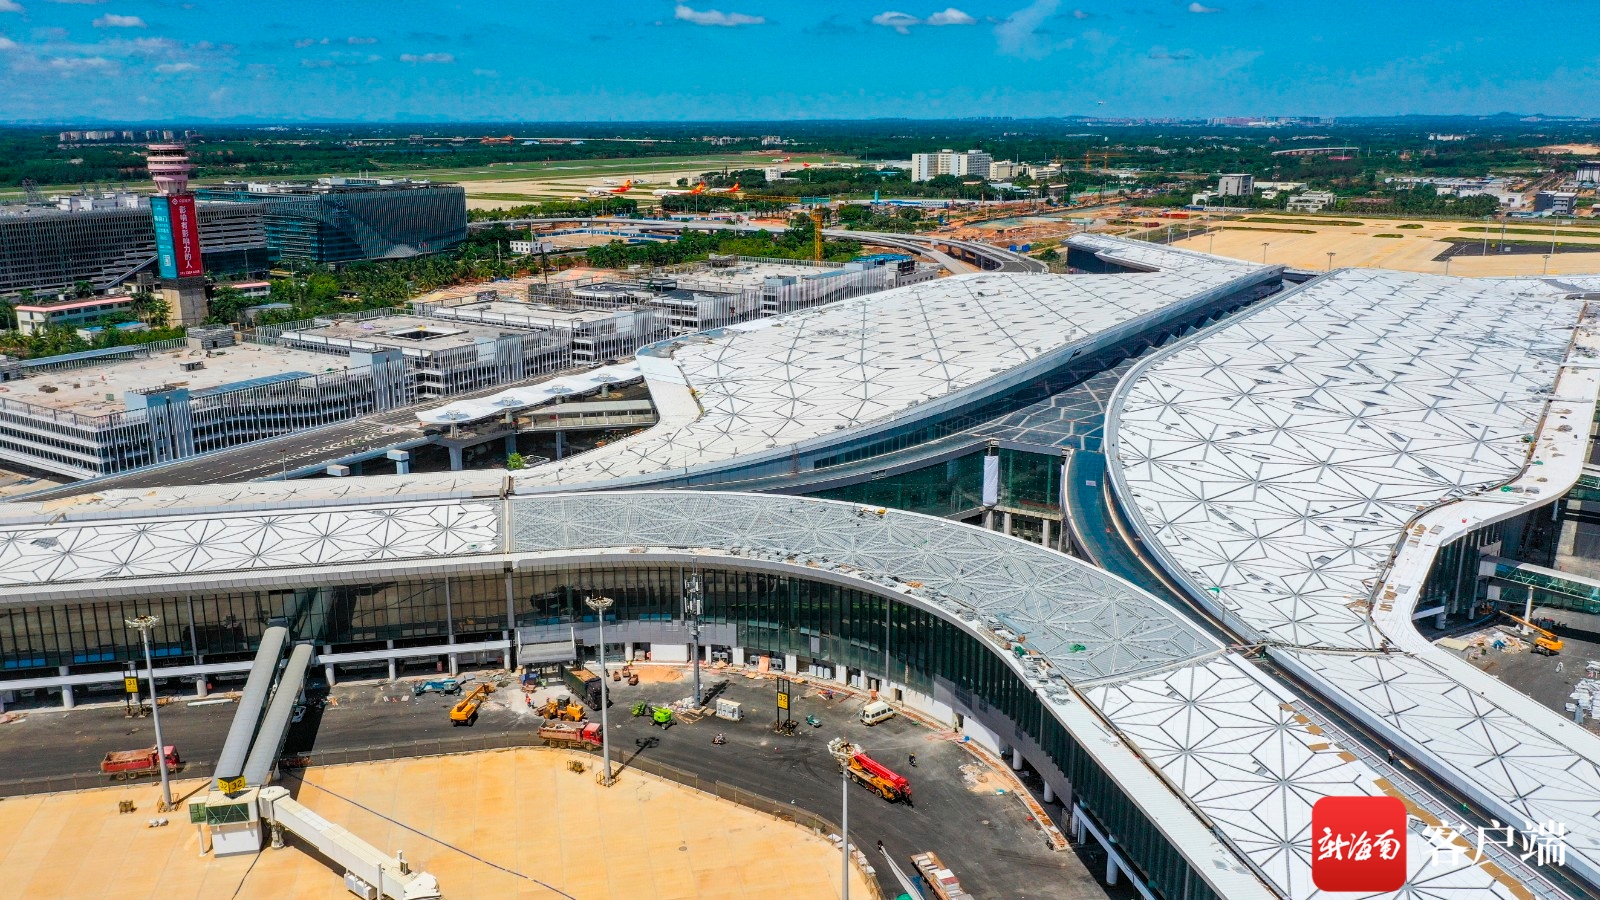 海口美兰机场二期主体工程即将完工
-国际快递价格